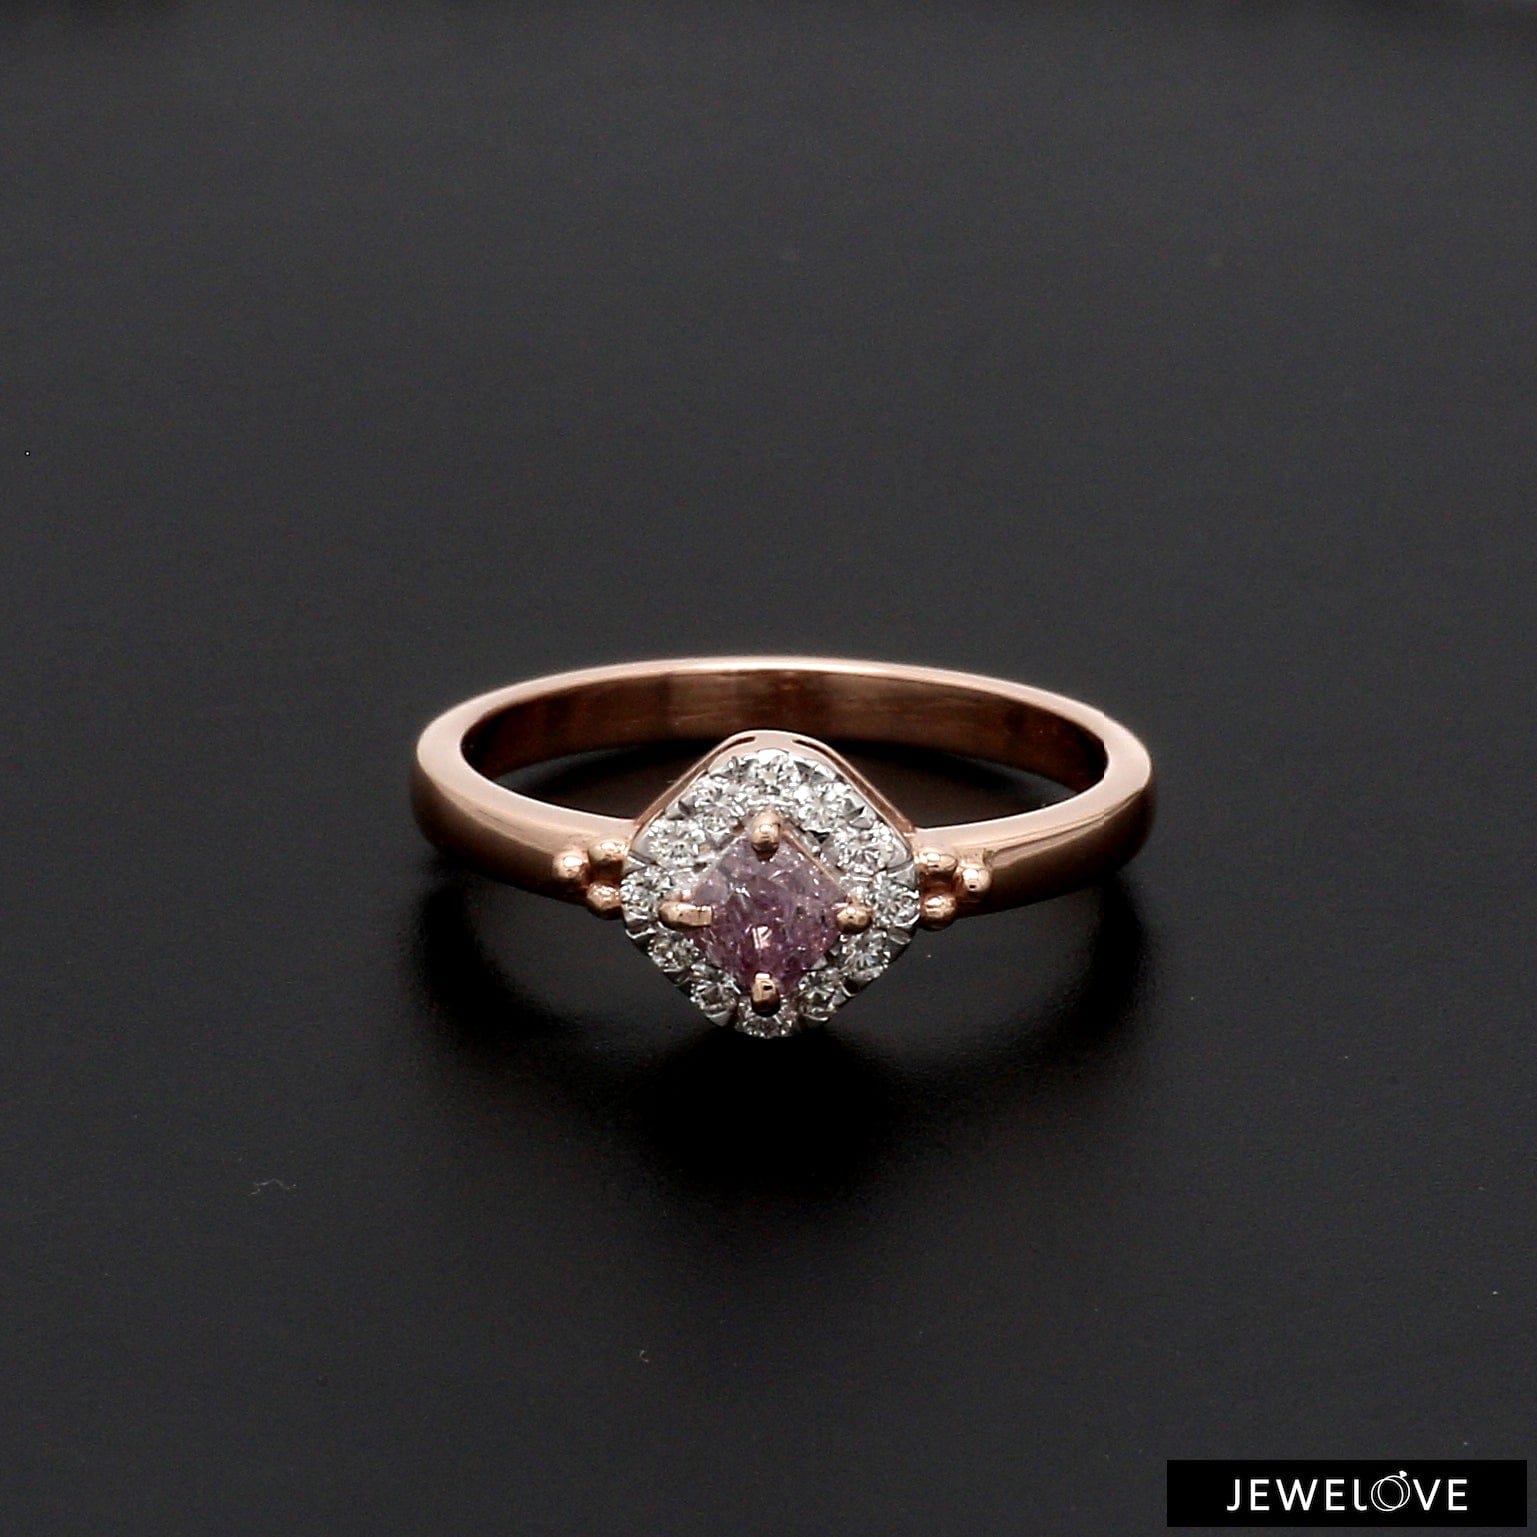 Buy Diamond Engagement Rings for Women Online | ORNAZ